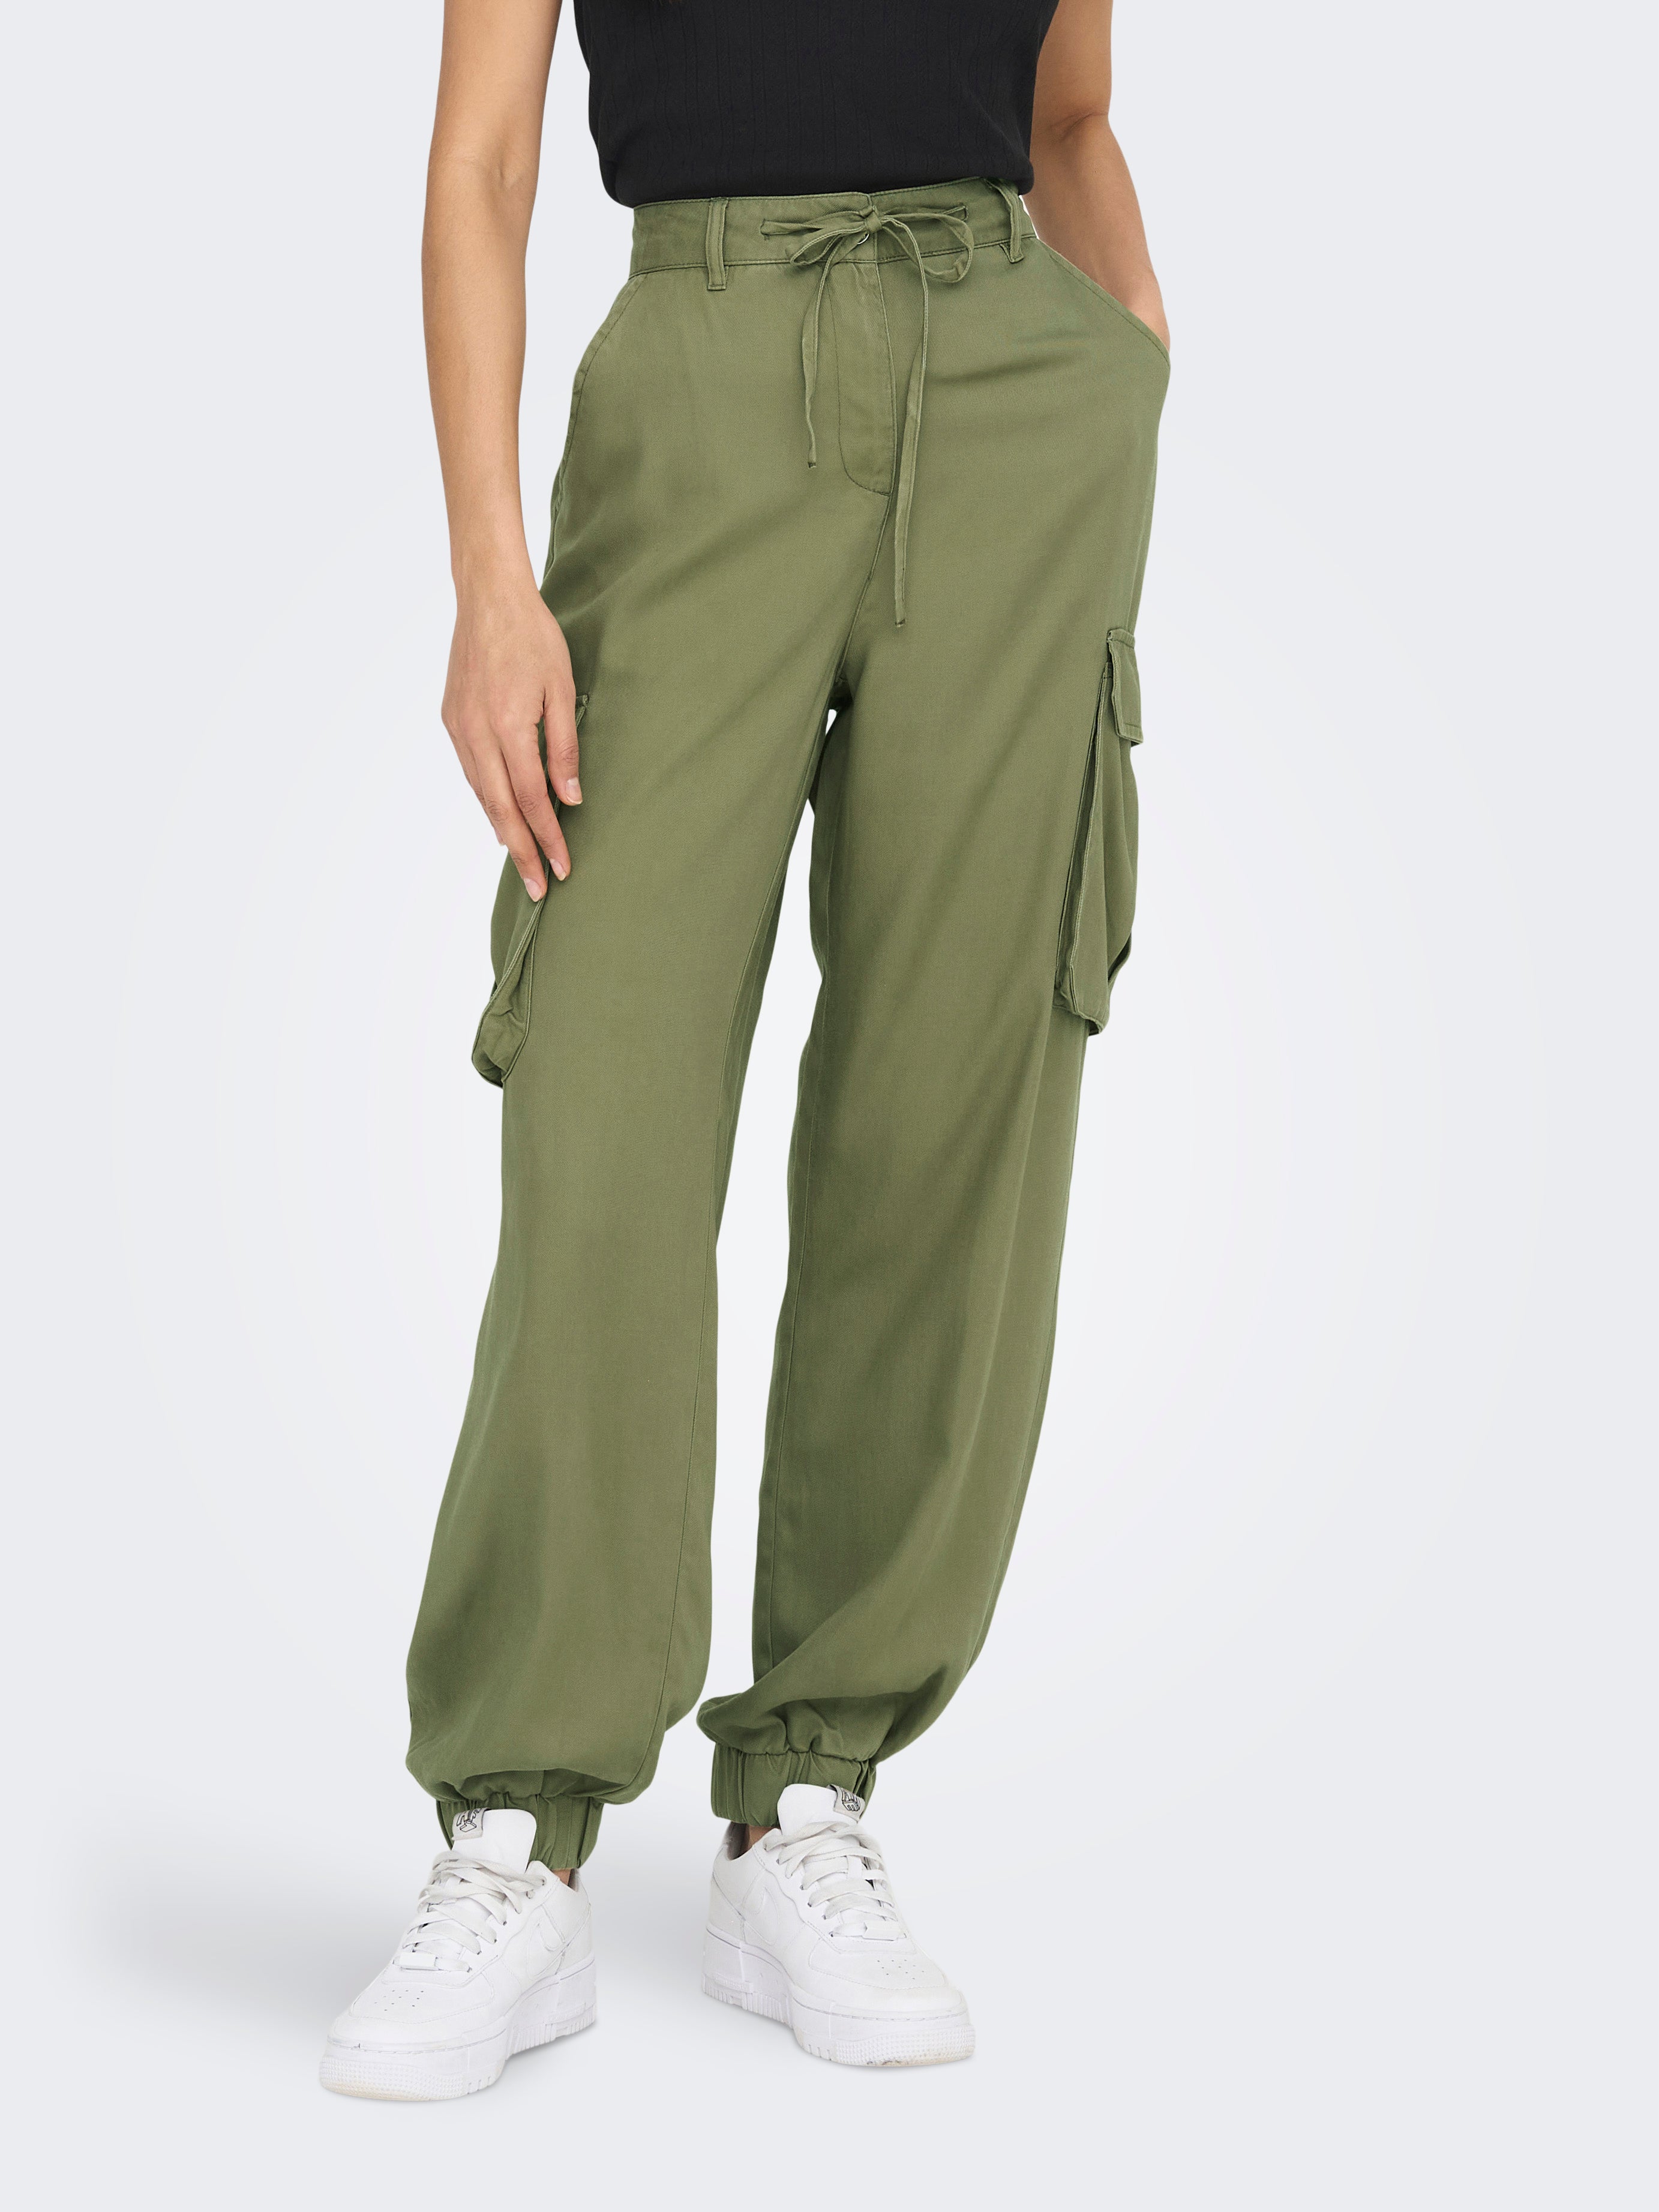 CELIO Cargos : Buy CELIO Light Green Pant Online | Nykaa Fashion.